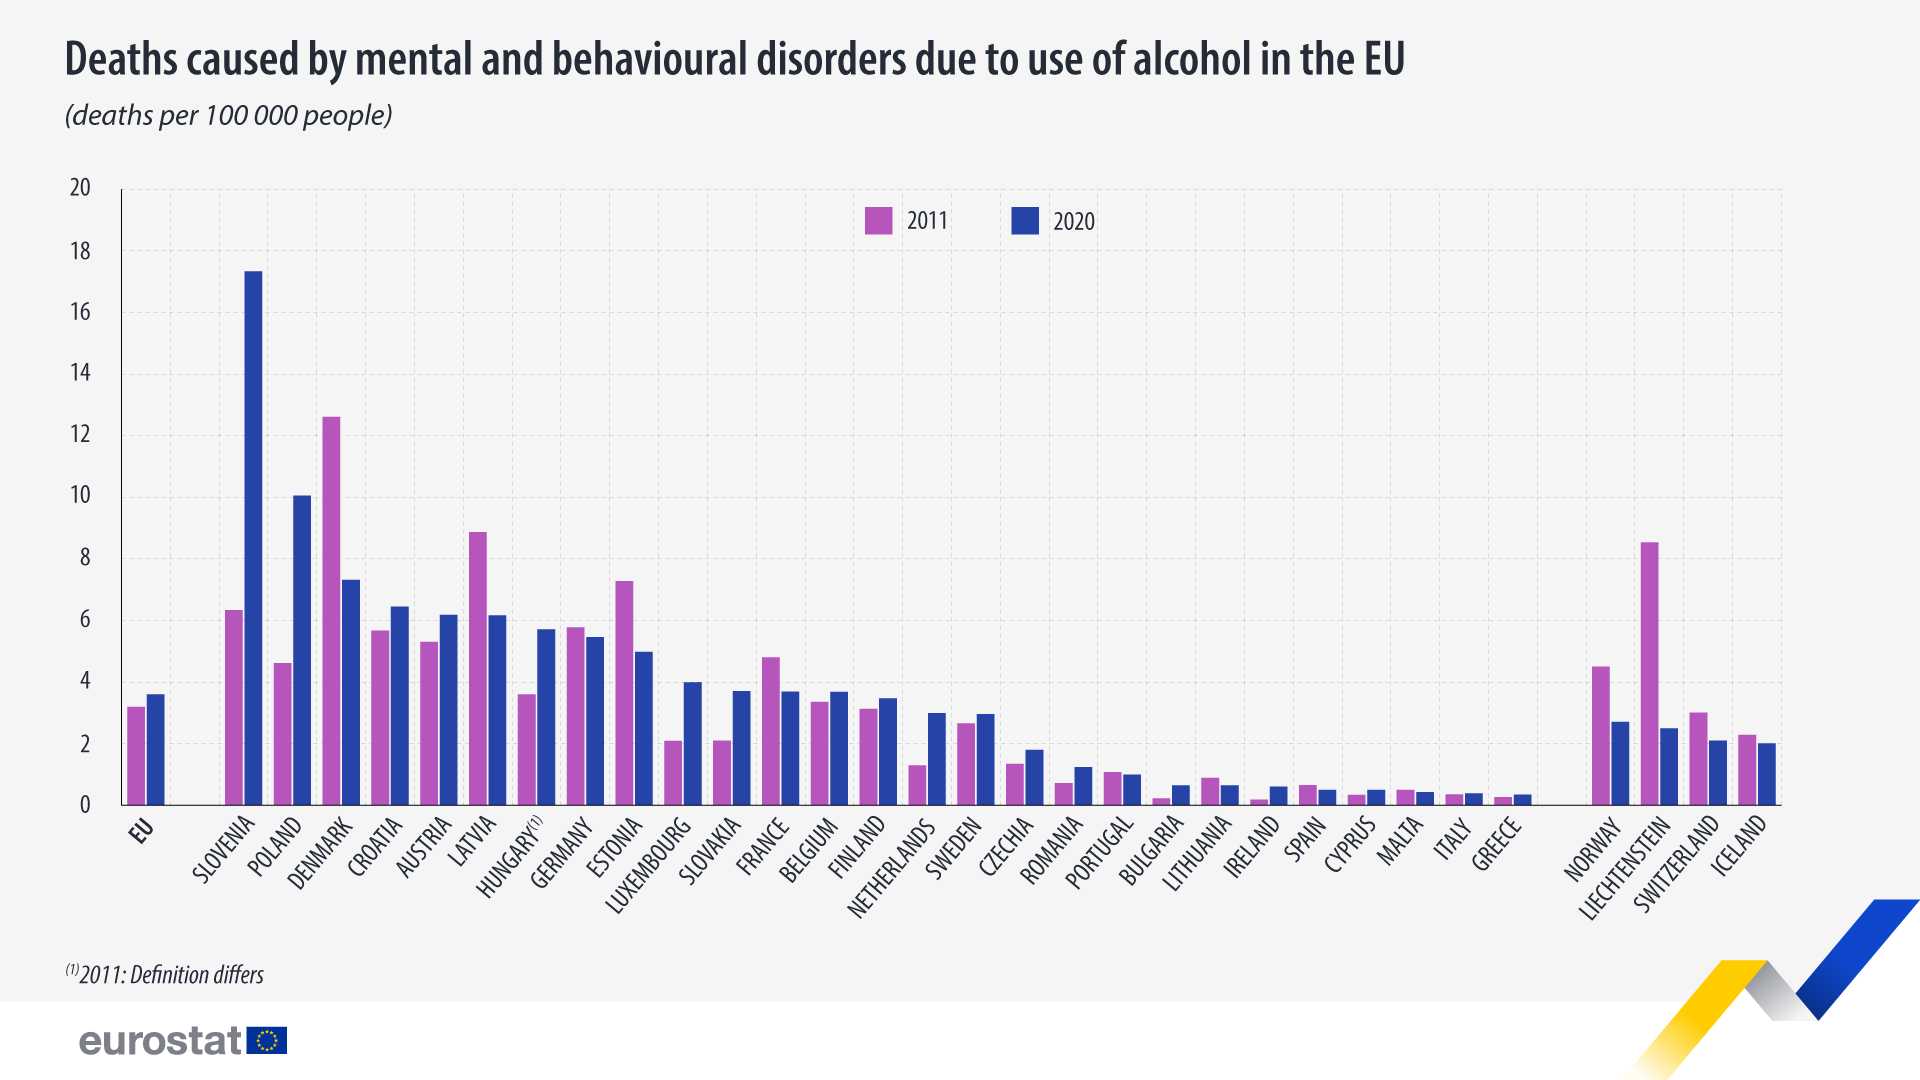 نمودار میله ای: مرگ و میر ناشی از اختلالات روانی و رفتاری ناشی از مصرف الکل در اتحادیه اروپا، میزان مرگ و میر